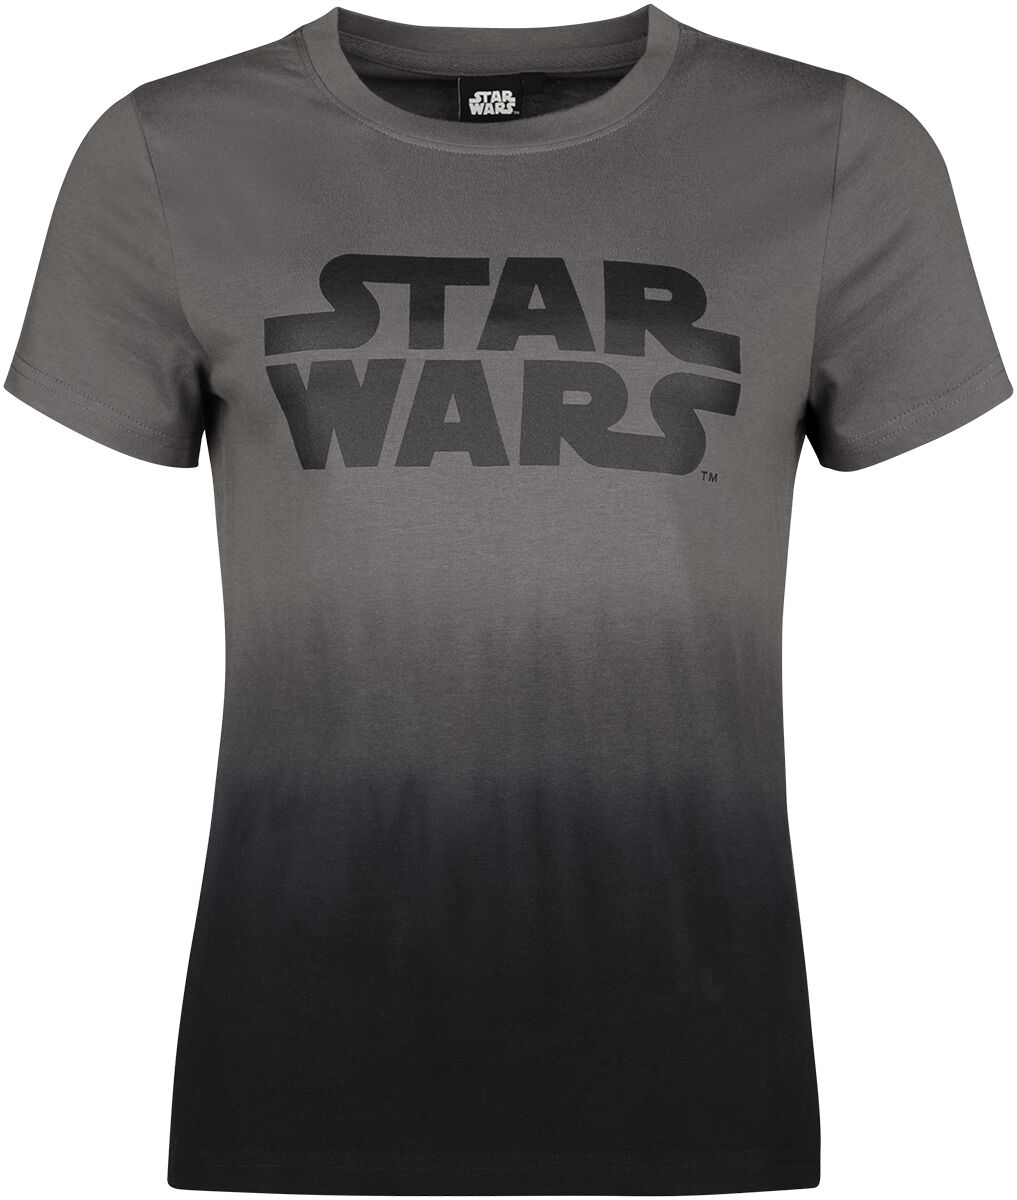 Star Wars Star Wars T-Shirt multicolor in L von Star Wars